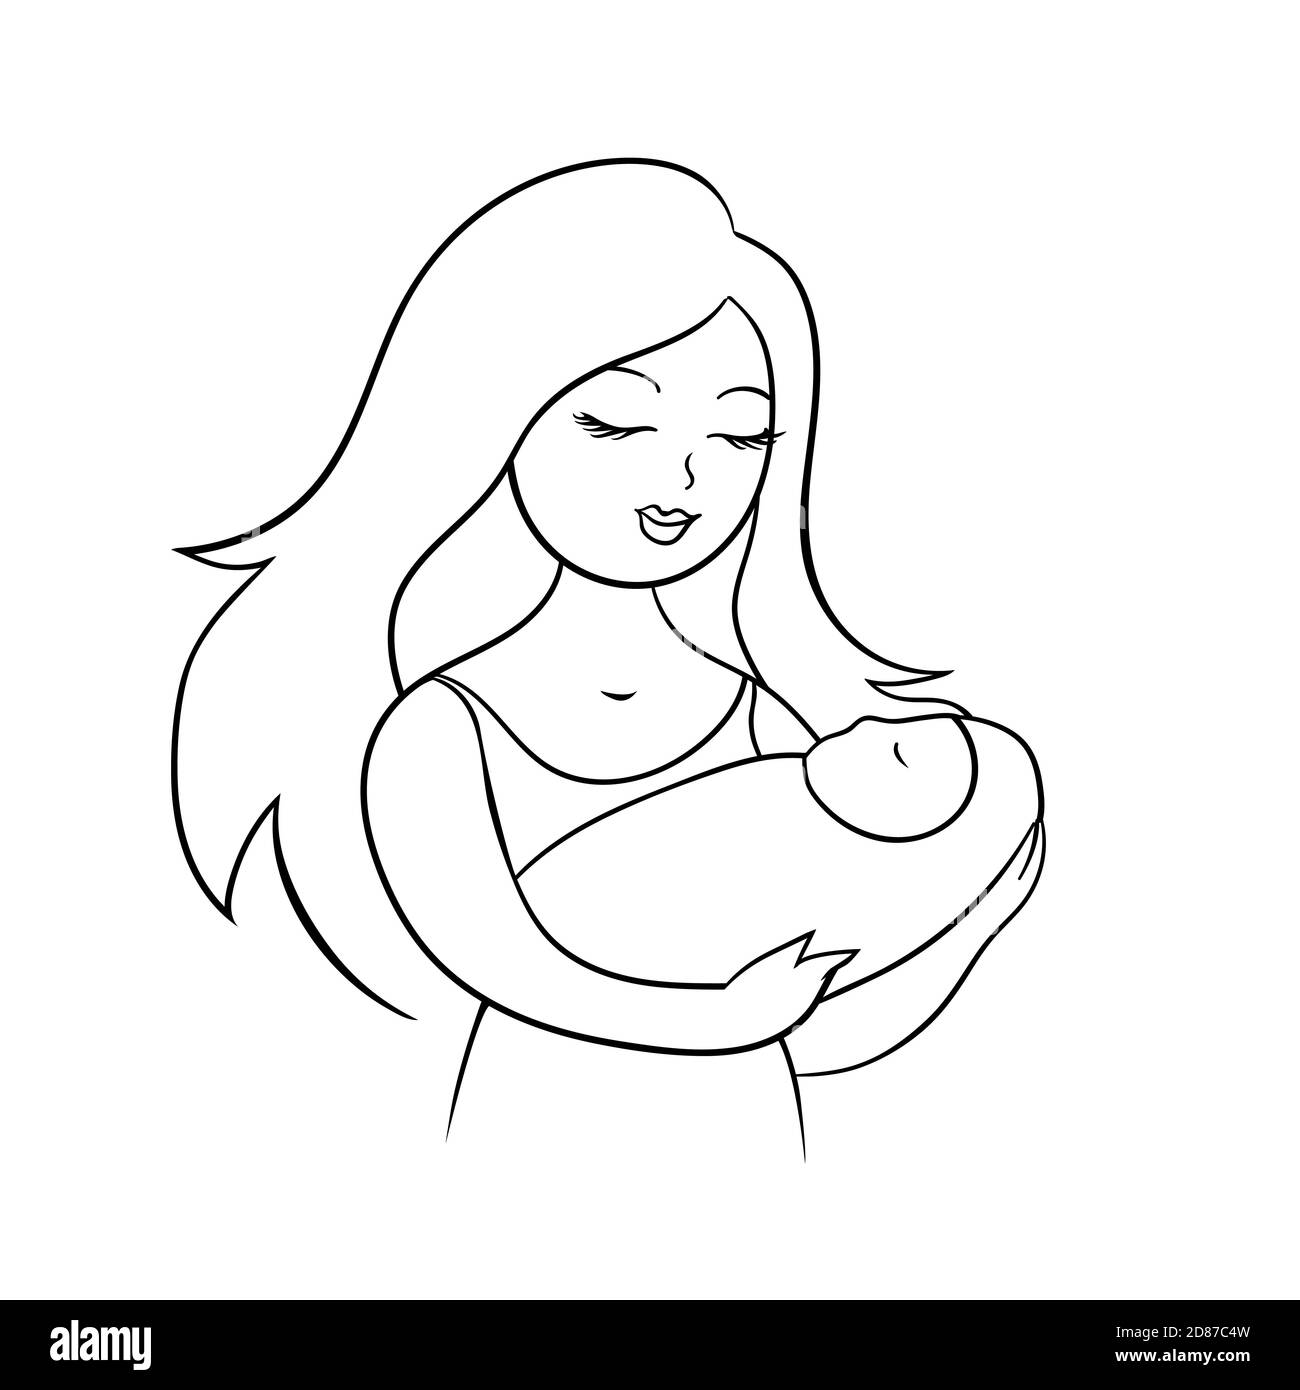 Jeune mère avec un bébé dans ses bras. La femme a un sourire heureux sur son visage. Illustration de dessin animé vectoriel avec des lignes. Illustration de Vecteur